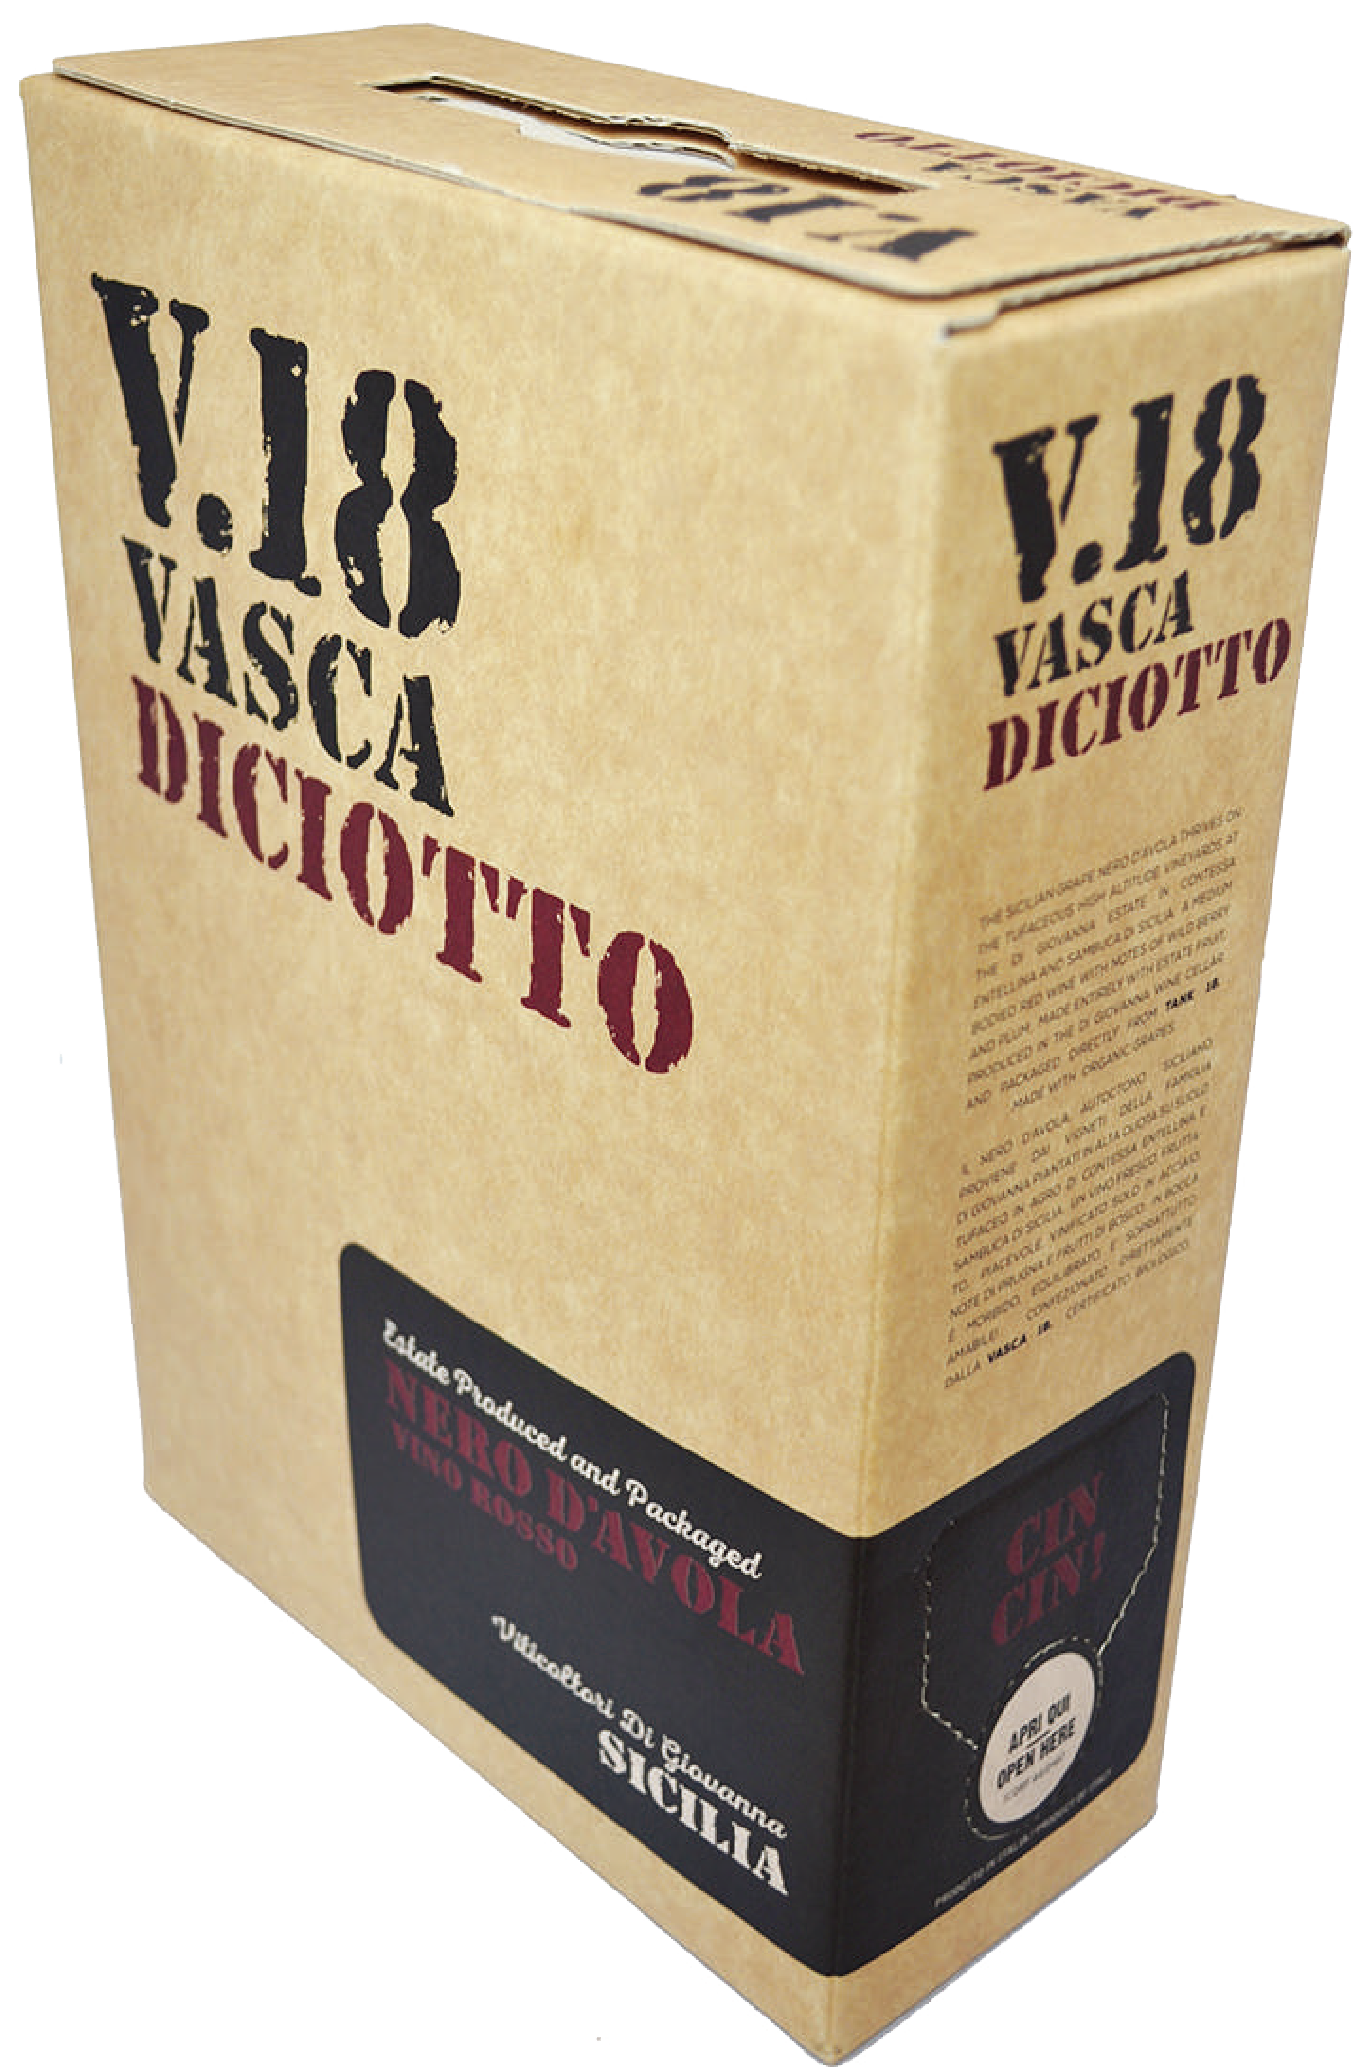 ディ・ジョヴァンナ　V.18(ヴァスカ・ディチョット)ネロ・ダヴォラ　3000ml 箱入り　（赤） 2020 